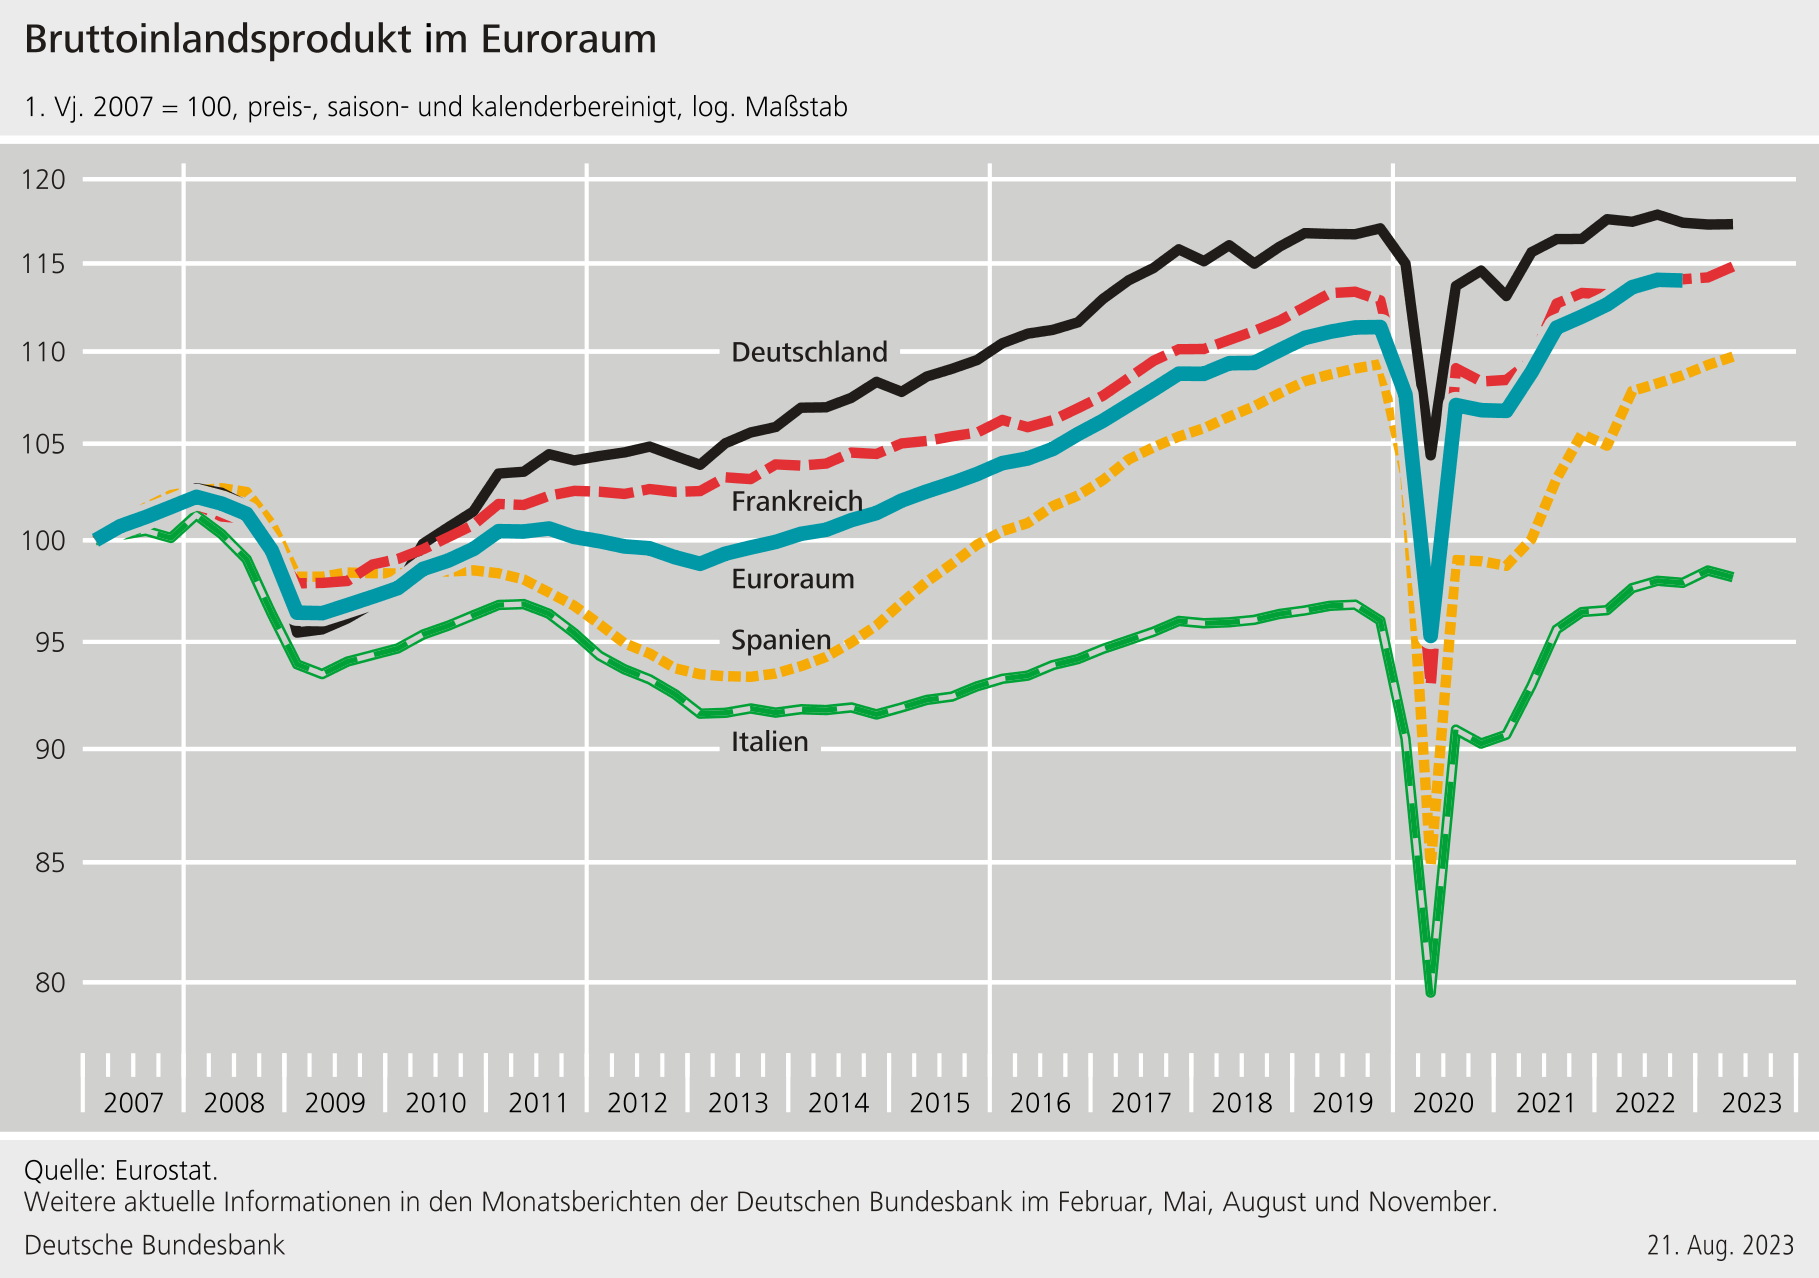 Diese Infografik zeigt das Bruttoinlandsprodukt (BIP) im Euroraum über einen Zeitraum von 2007 bis 2023. Das BIP ist ein wirtschaftlicher Indikator, der den Wert aller Waren und Dienstleistungen misst, die innerhalb eines Jahres in einer Volkswirtschaft produziert werden.

Die Grafik verwendet das Jahr 2007 als Basisjahr (2007 = 100), und alle folgenden Werte werden als Indexzahlen in Bezug auf dieses Jahr dargestellt. Die Daten sind preis-, saison- und kalenderbereinigt und in logarithmischer Skalierung angegeben, sodass prozentuale Veränderungen durch gleichbleibende Abstände repräsentiert werden, was den Vergleich von Wachstumsraten erleichtert.

Verschiedene Länder/Landgruppen sind mit unterschiedlichen Linienfarben markiert:

- Deutschland ist durch eine solide schwarze Linie dargestellt.
- Frankreich wird durch eine gestrichelte rote Linie gezeigt.
- Der Euroraum insgesamt (also die Länder, die den Euro als Währung verwenden) wird durch eine gestrichelte blaue Linie repräsentiert.
- Spanien ist durch eine gestrichelte gelbe Linie markiert.
- Italien wird durch eine solide grüne Linie dargestellt.

Aus der Grafik ist ersichtlich, dass es im Zuge der Finanzkrise von 2008/2009 einen deutlichen Rückgang des BIP gab, der alle dargestellten Volkswirtschaften betraf. Es gibt auch einen sehr starken Einbruch im Jahr 2020, was vermutlich auf die Covid-19-Pandemie und die damit einhergehenden wirtschaftlichen Auswirkungen zurückzuführen ist.

Die Grafik zeigt, wie sich das BIP über die Zeit erholt hat und welche Schwankungen es zwischen den einzelnen Ländern gab. Zum Beispiel kann man sehen, dass das deutsche BIP relativ stark gewachsen ist, während das italienische BIP über den gesamten Zeitraum gesehen weniger Wachstum verzeichnet.

Unten in der Grafik ist die Quelle angegeben: Eurostat. Es gibt auch einen Hinweis, dass weitere Informationen in den Monatsberichten der Deutschen Bundesbank zu finden sind, die im Februar, Mai, August und November veröffentlicht werden. Das Datum der Erstellung dieser Infografik ist der 21. August 2023.